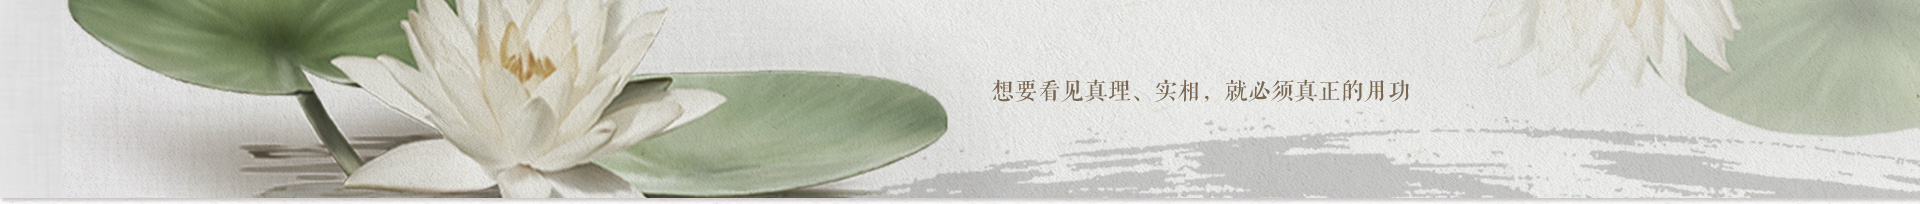 2012年8月19日-25日福建资国寺七日禅修法讯